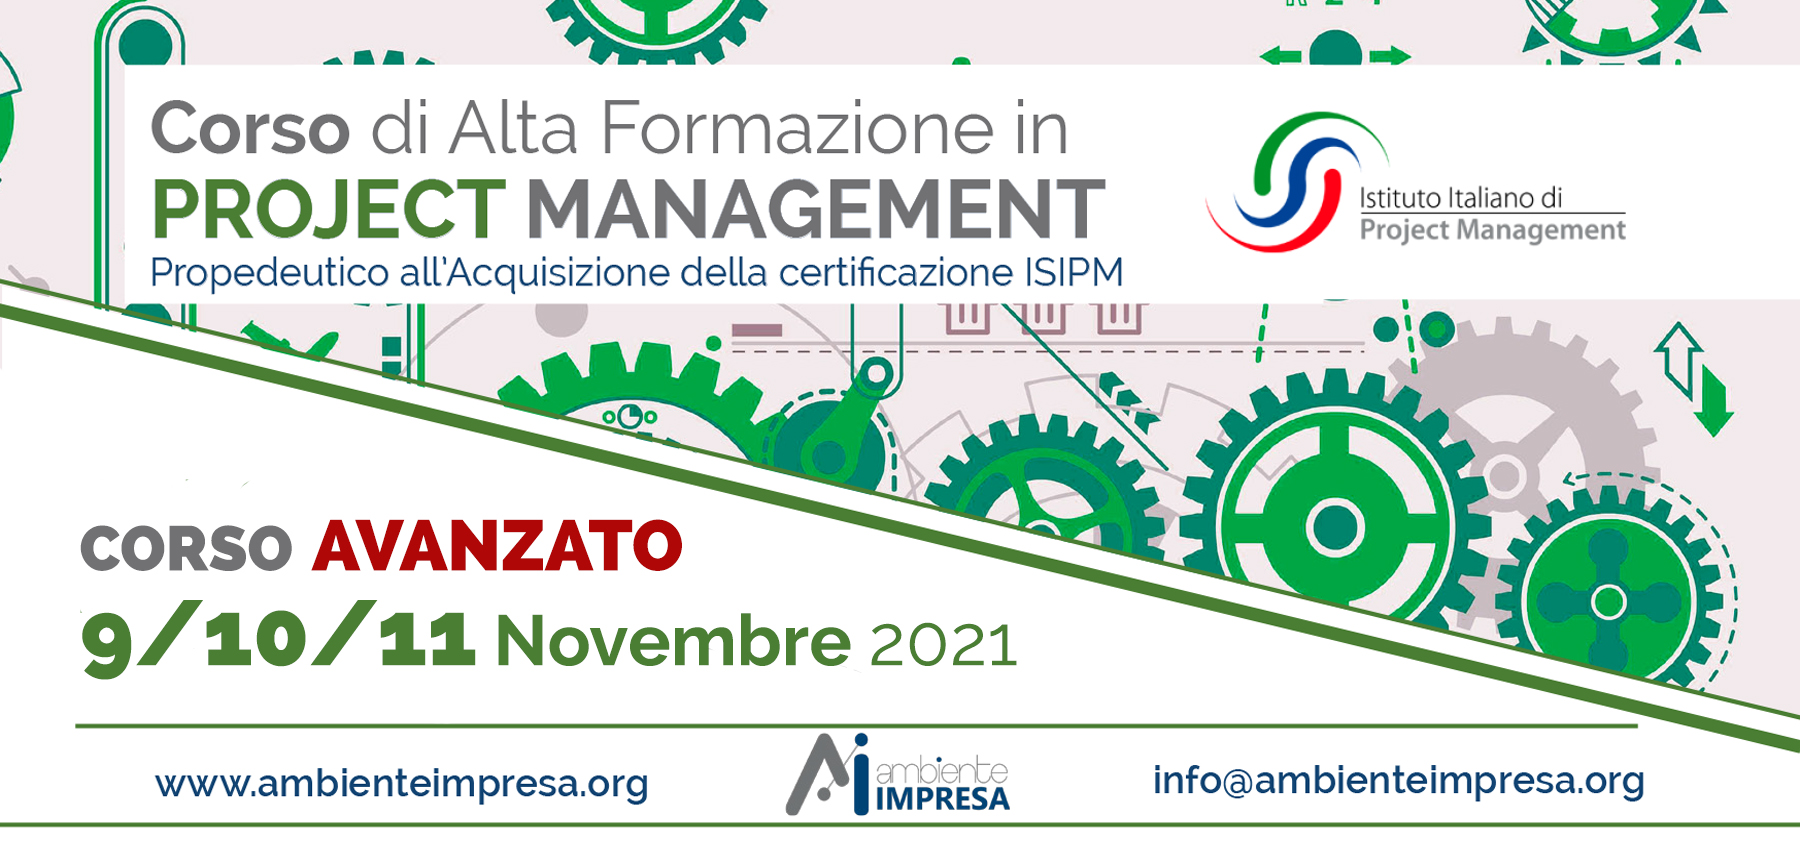 Project Management AVANZATO Novembre 2021 - Ambiente Impresa srl Cagliari - Formazione